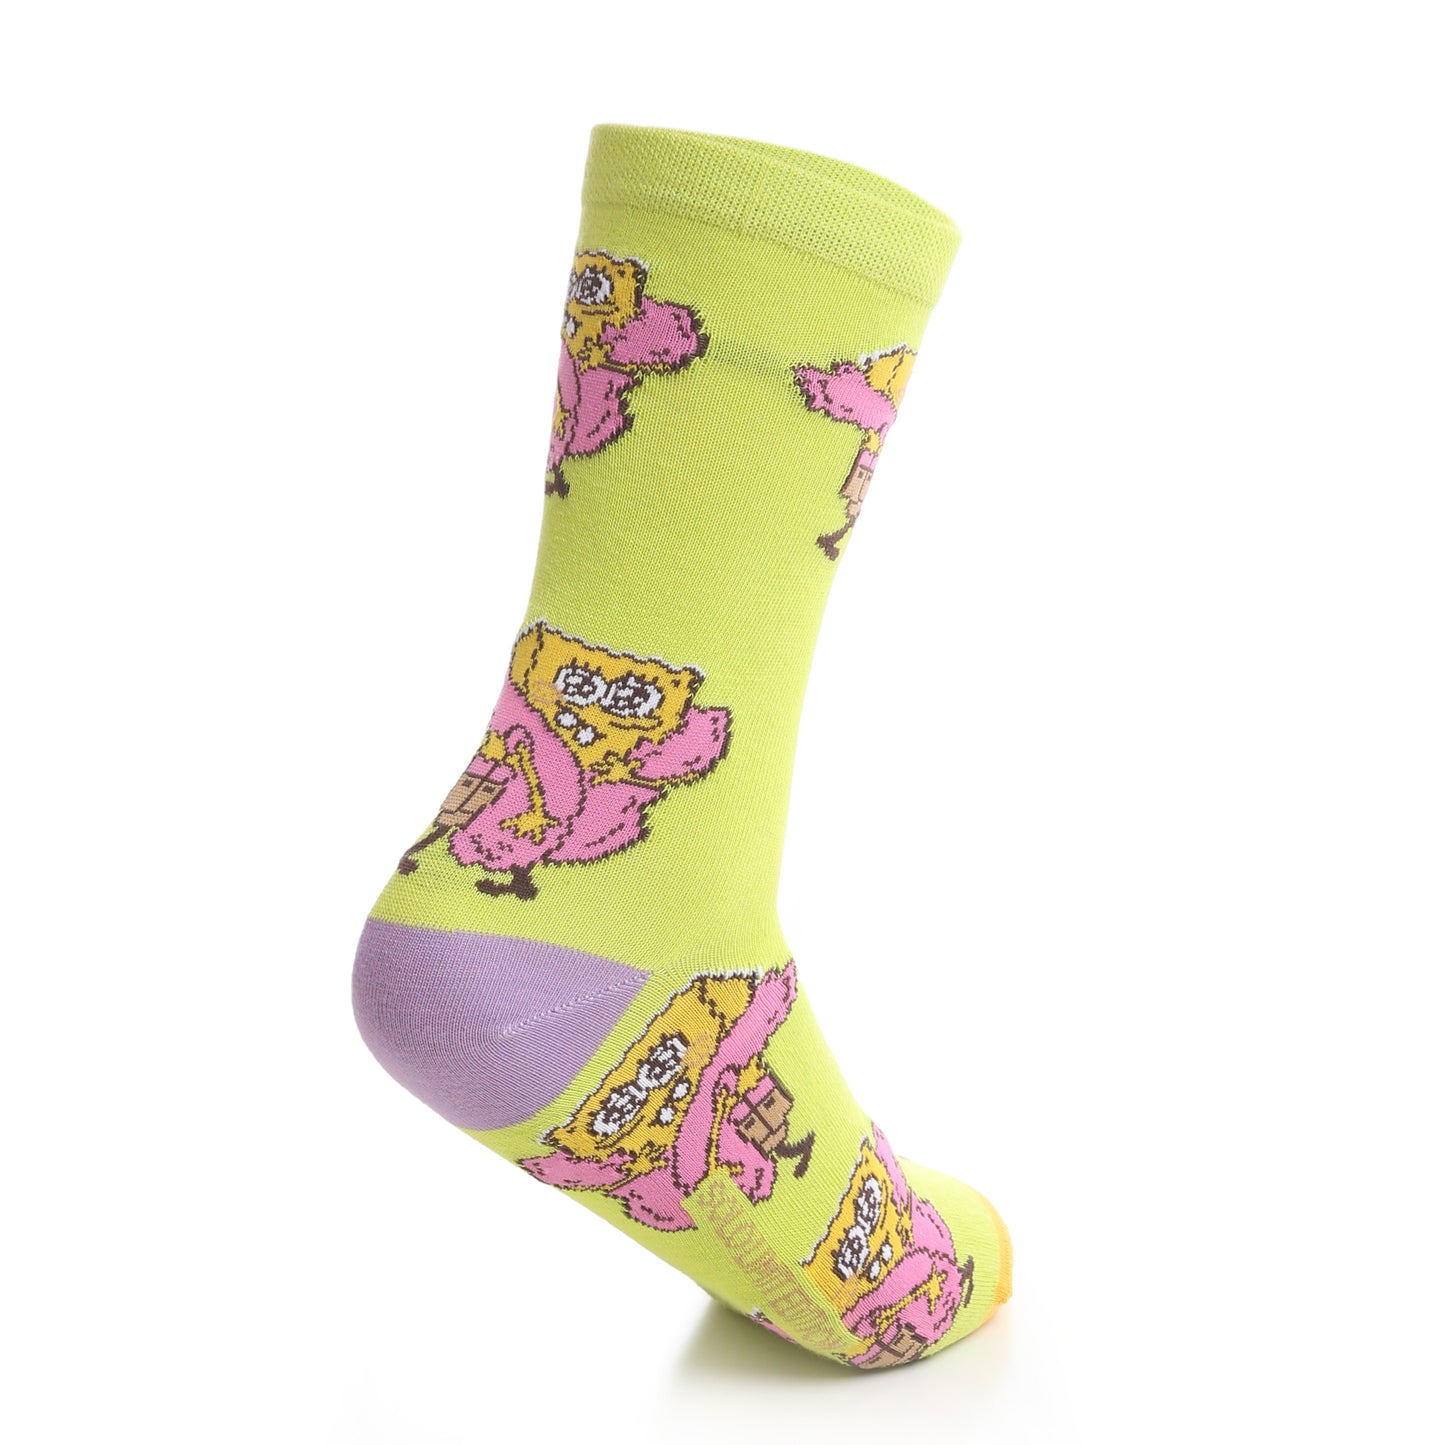 Cute Spongebob Socks